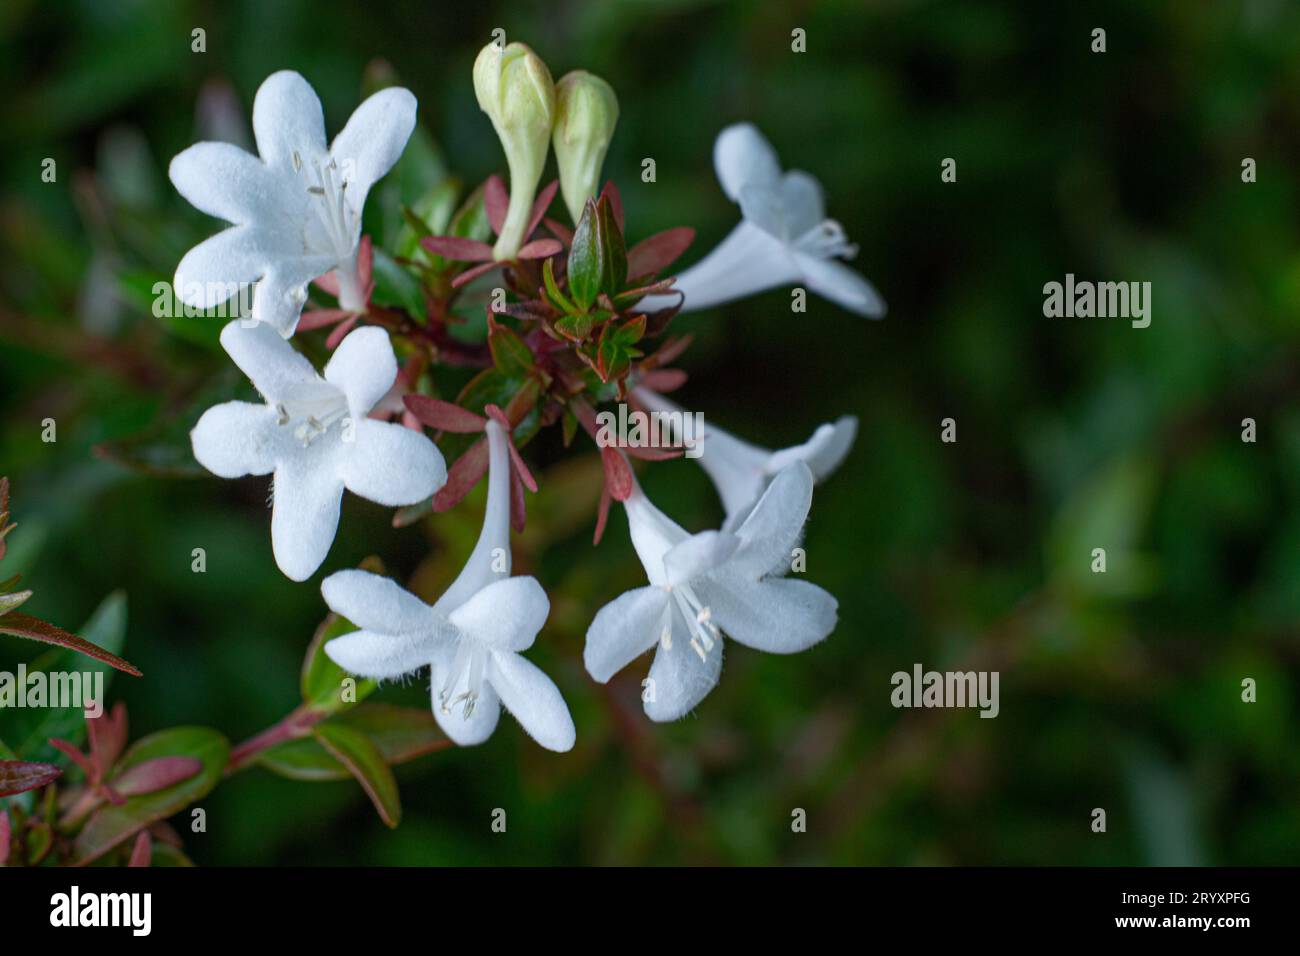 Close-up of abelia grandiflora flowers durante la floración de verano. Stock Photo